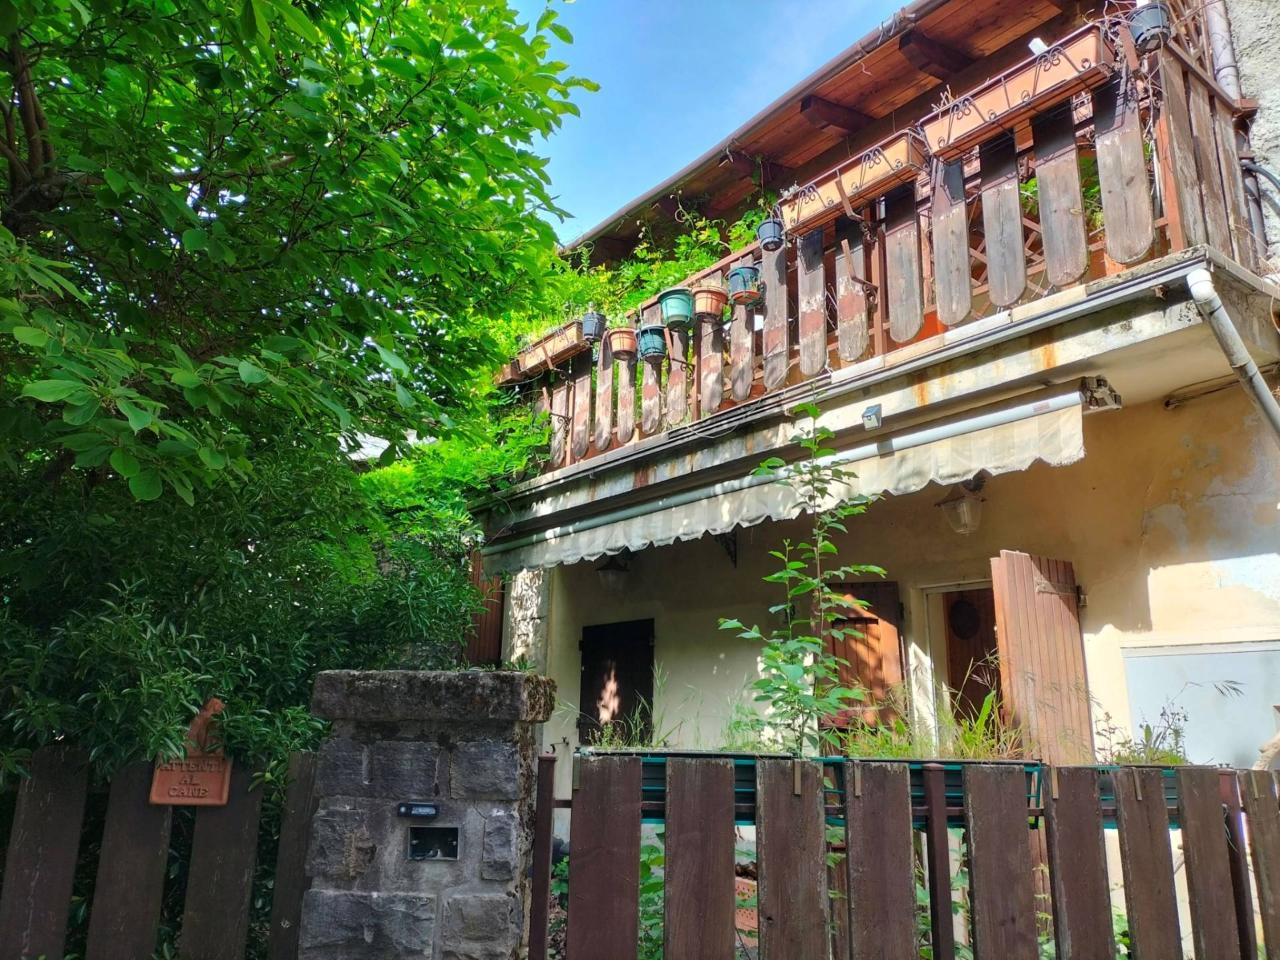 Casa indipendente in vendita a Lizzano In Belvedere